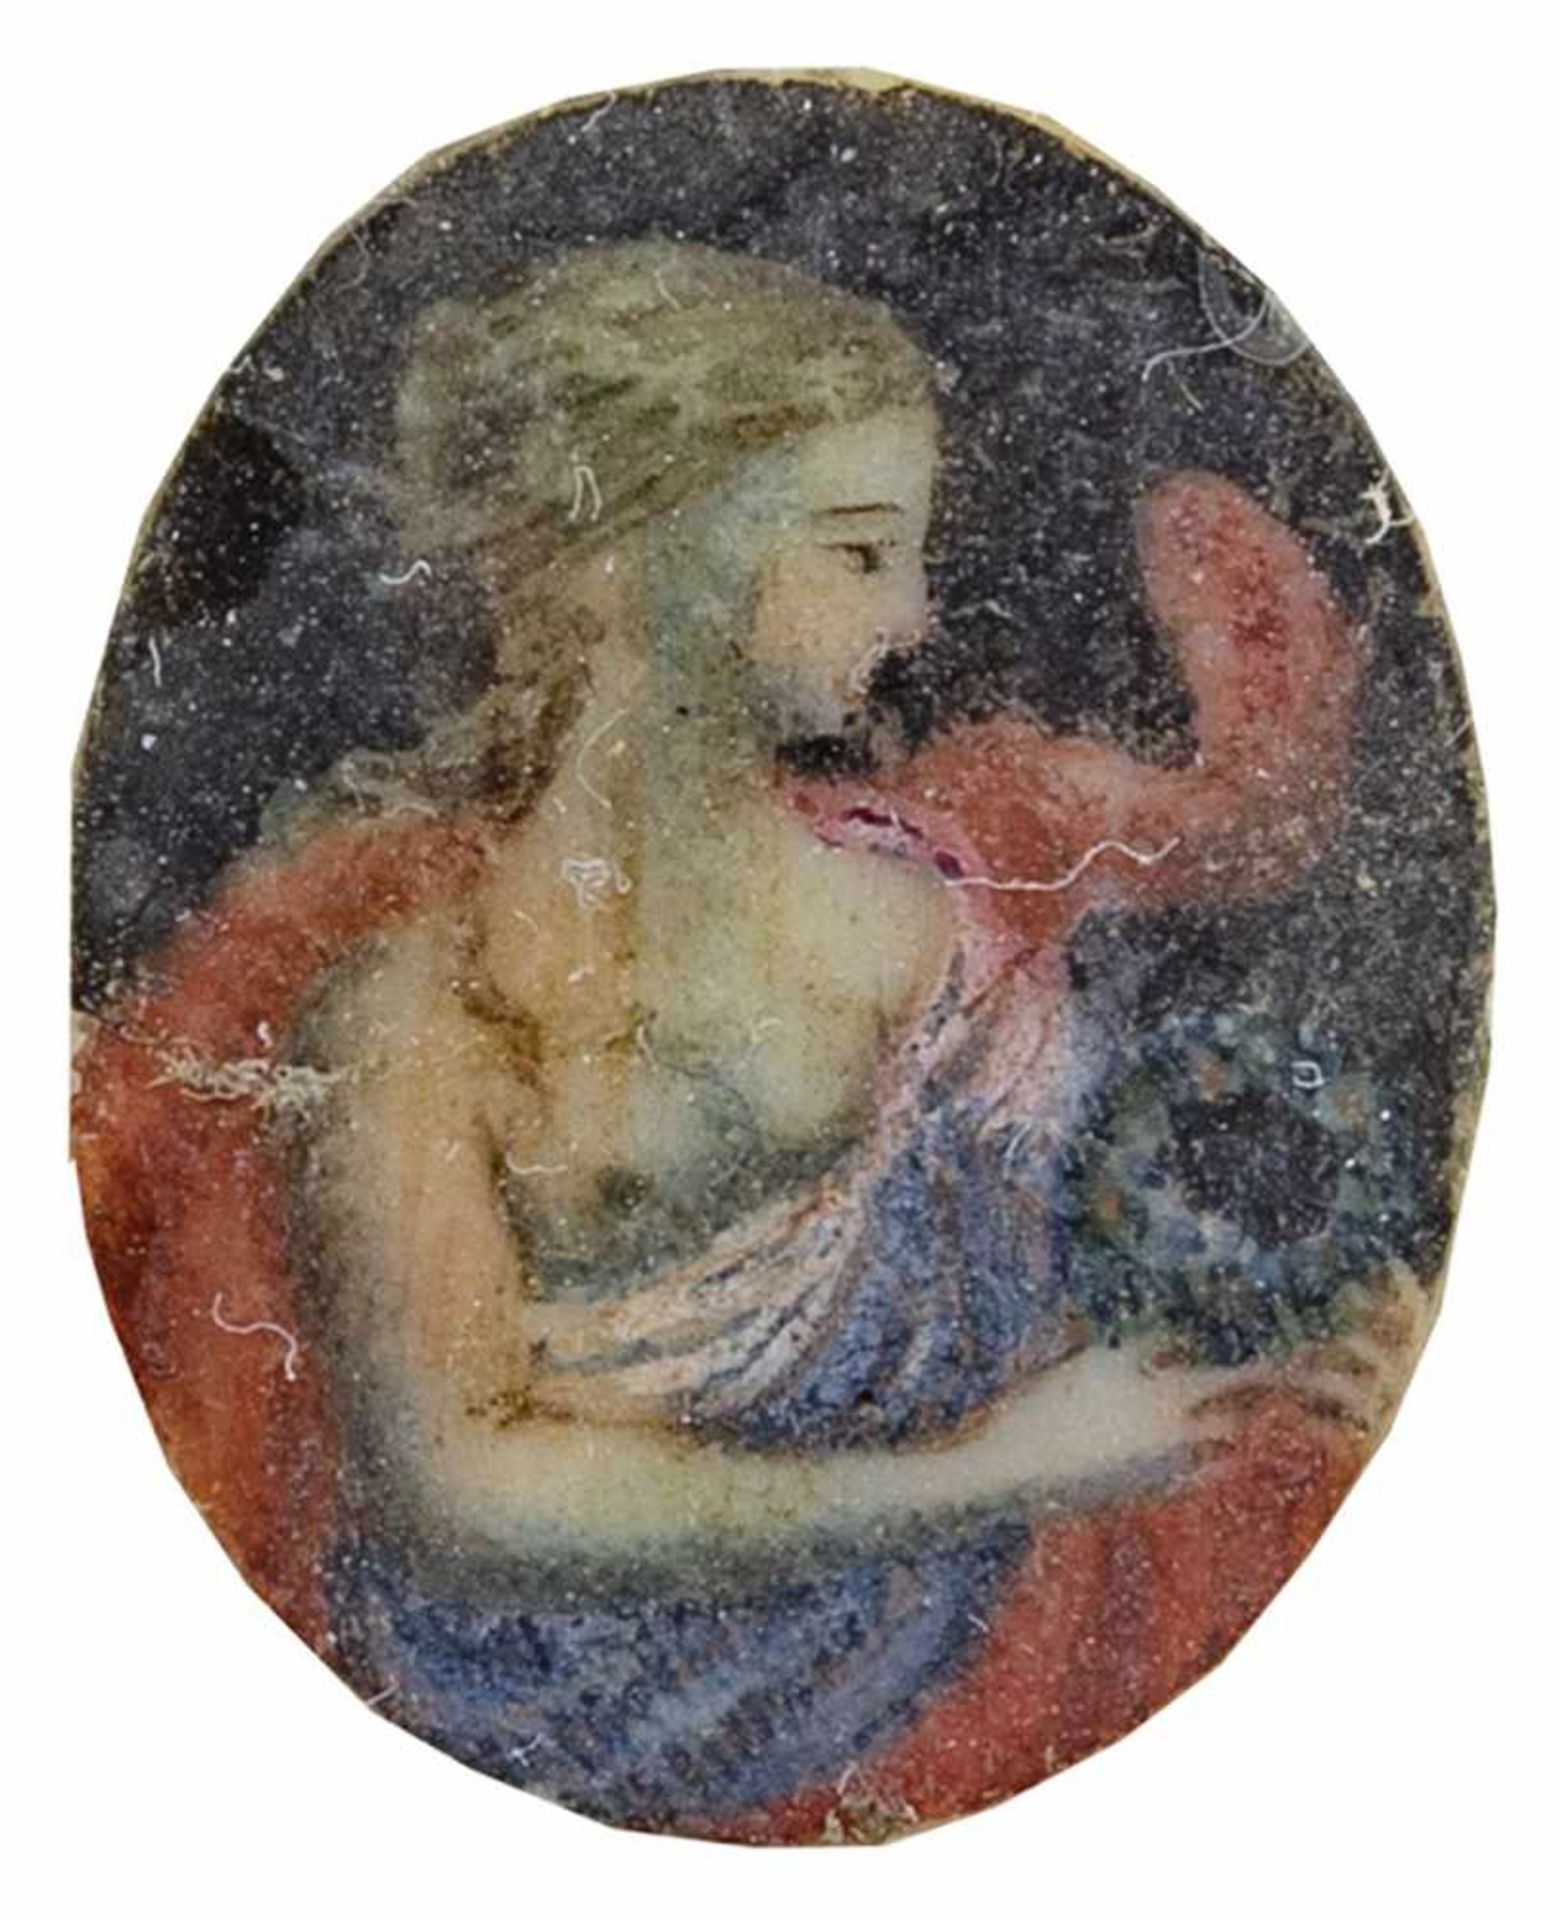 DE STYLE RENAISSANCEMiniature peintre sur ivoire, travail ancien, fin du 18ème siècle. Usur - Image 2 of 2